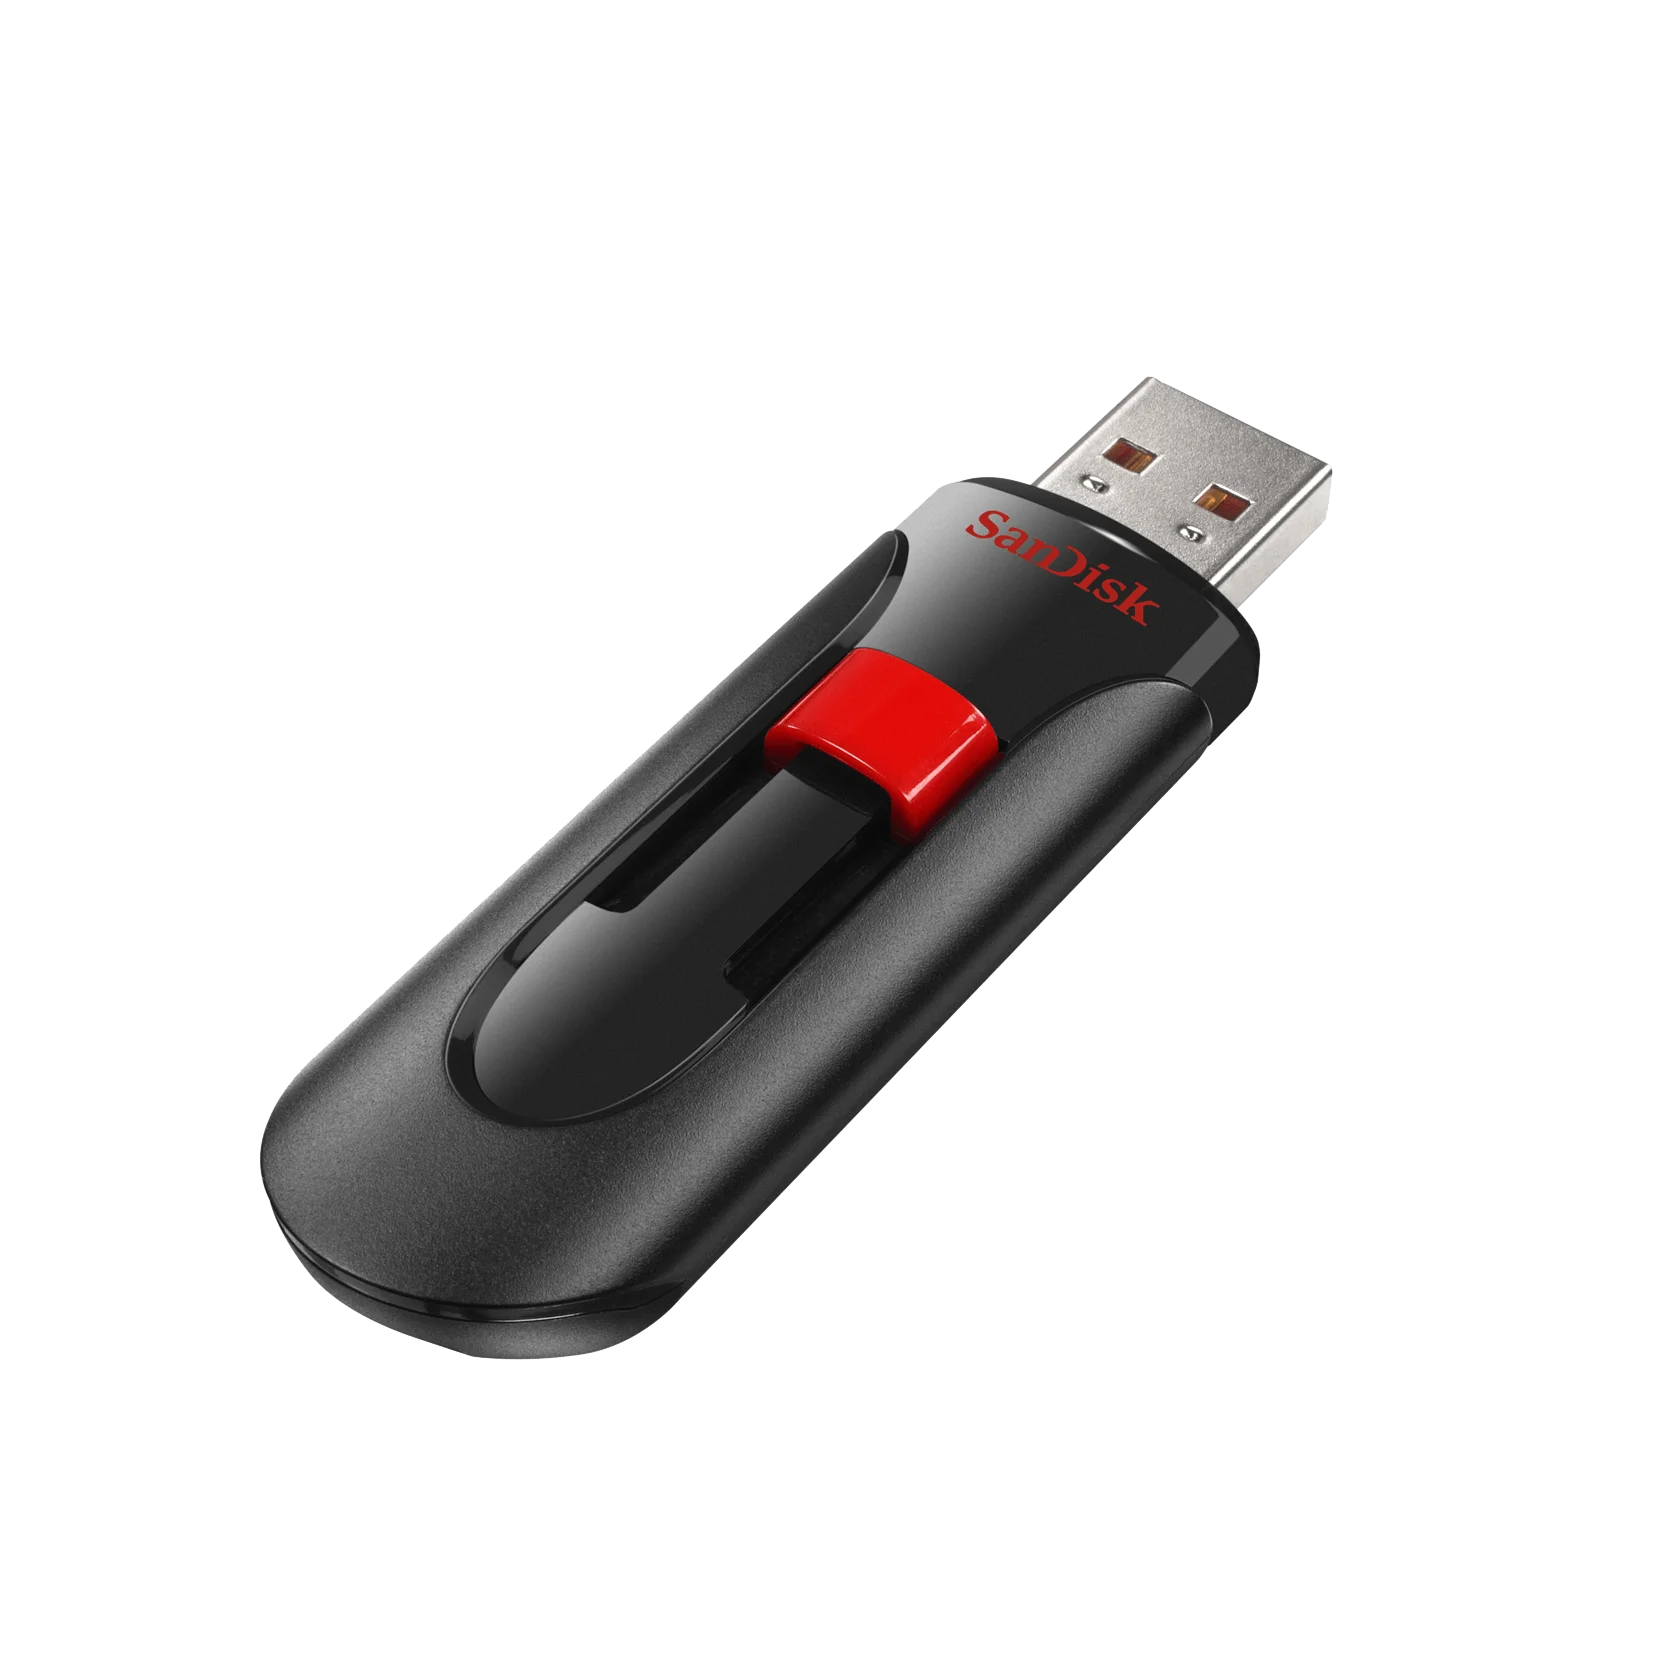 Купить флешку sandisk. SANDISK Cruzer Glide 16gb (3.0). Флешка SANDISK Cruzer Glide 128gb. SANDISK 16gb USB 3.0. USB флешка 64 GB SANDISK Cruzer Glide 3/0.